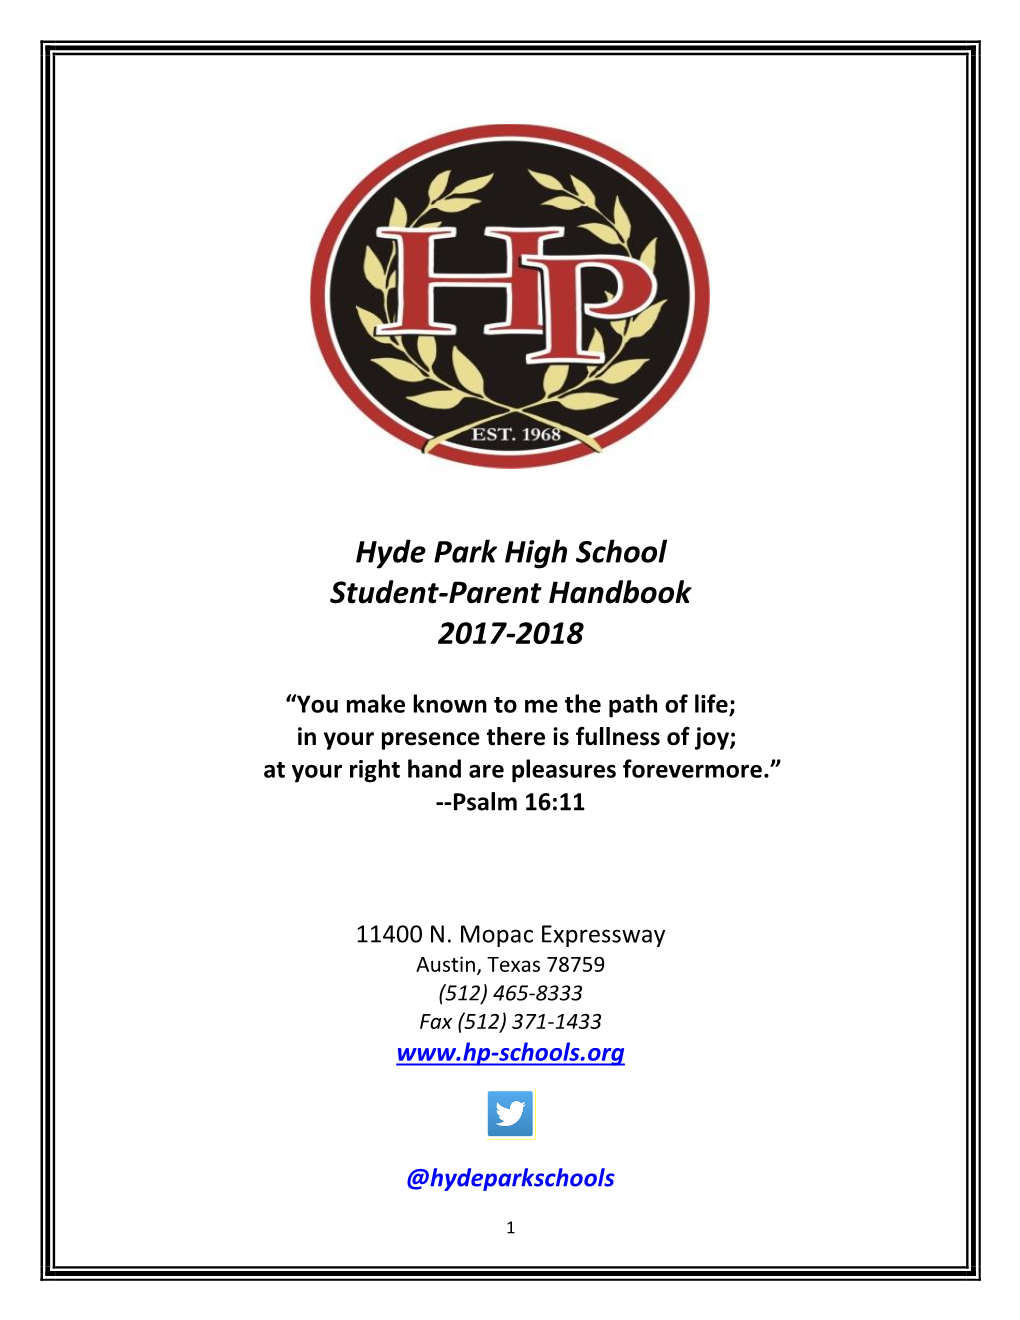 Hyde Park High School Student-Parent Handbook 2017-2018